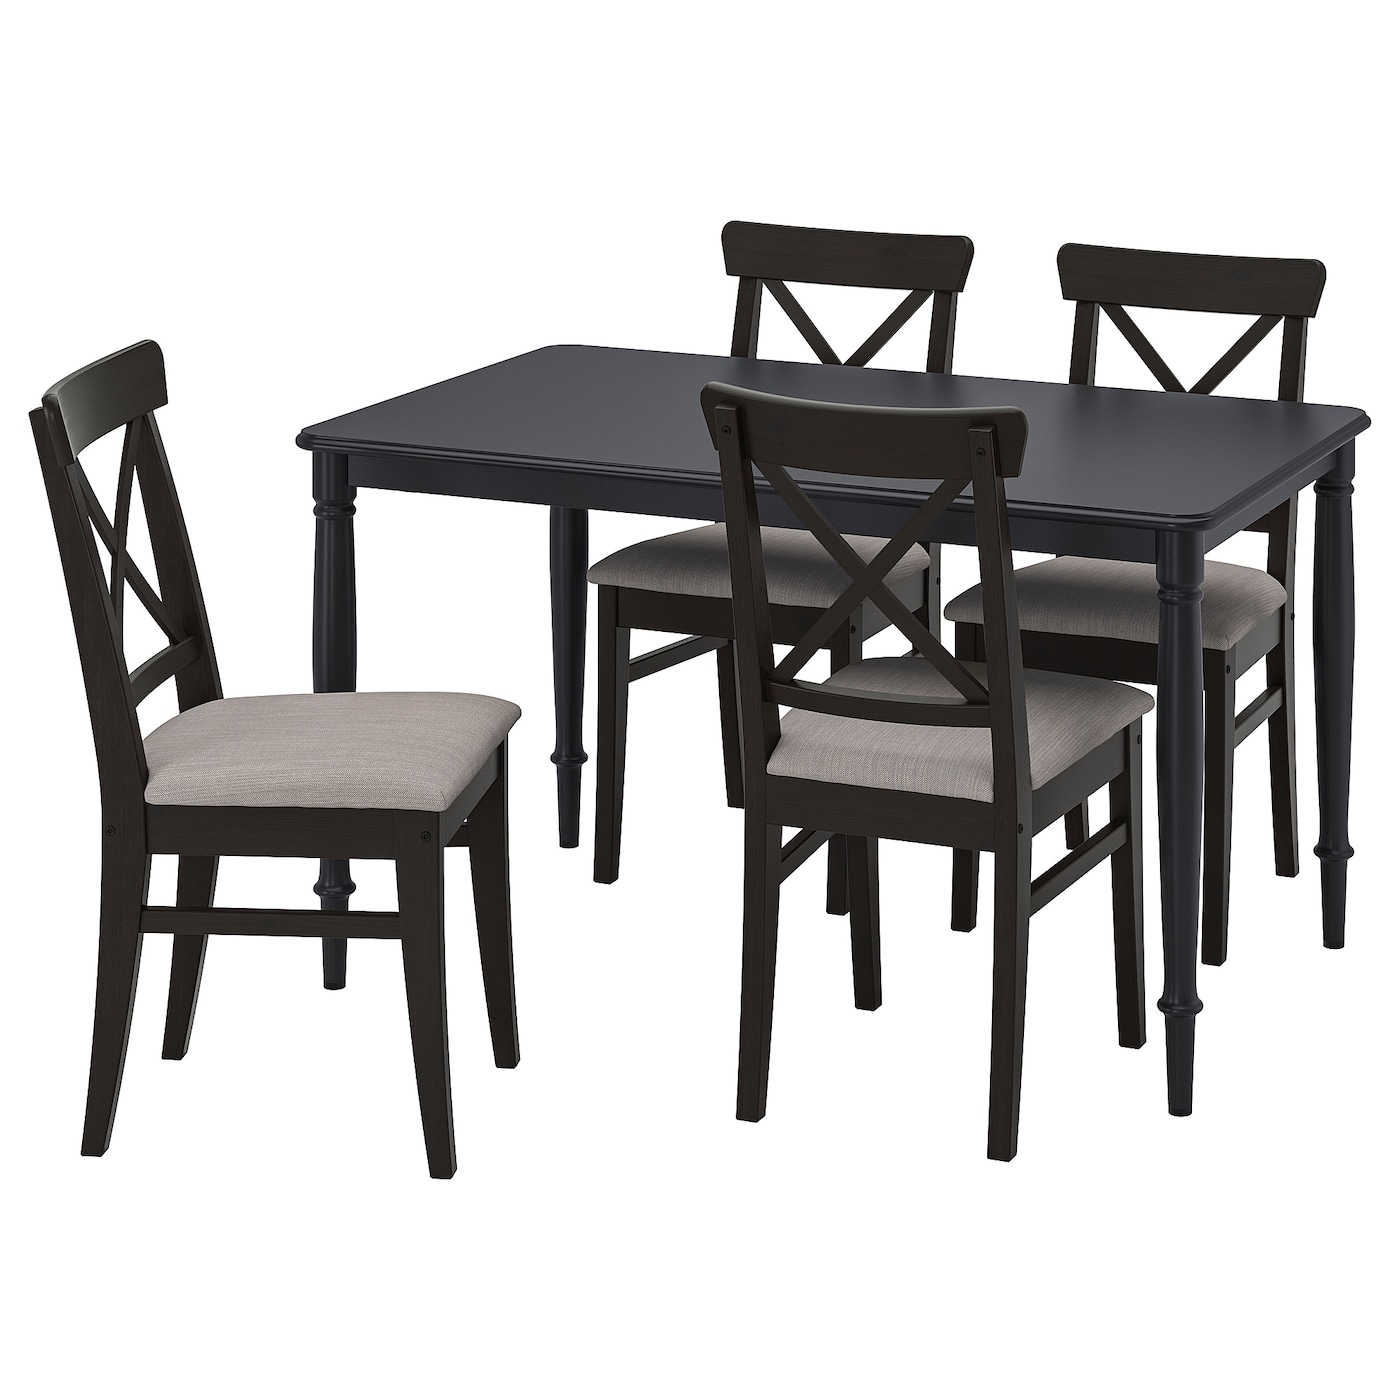 Стол и 4 стула - DANDERYD / INGOLF IKEA/ ДАНДЕРИД/ИНГОЛЬФ ИКЕА, 130х80х75 см, черный/коричневый